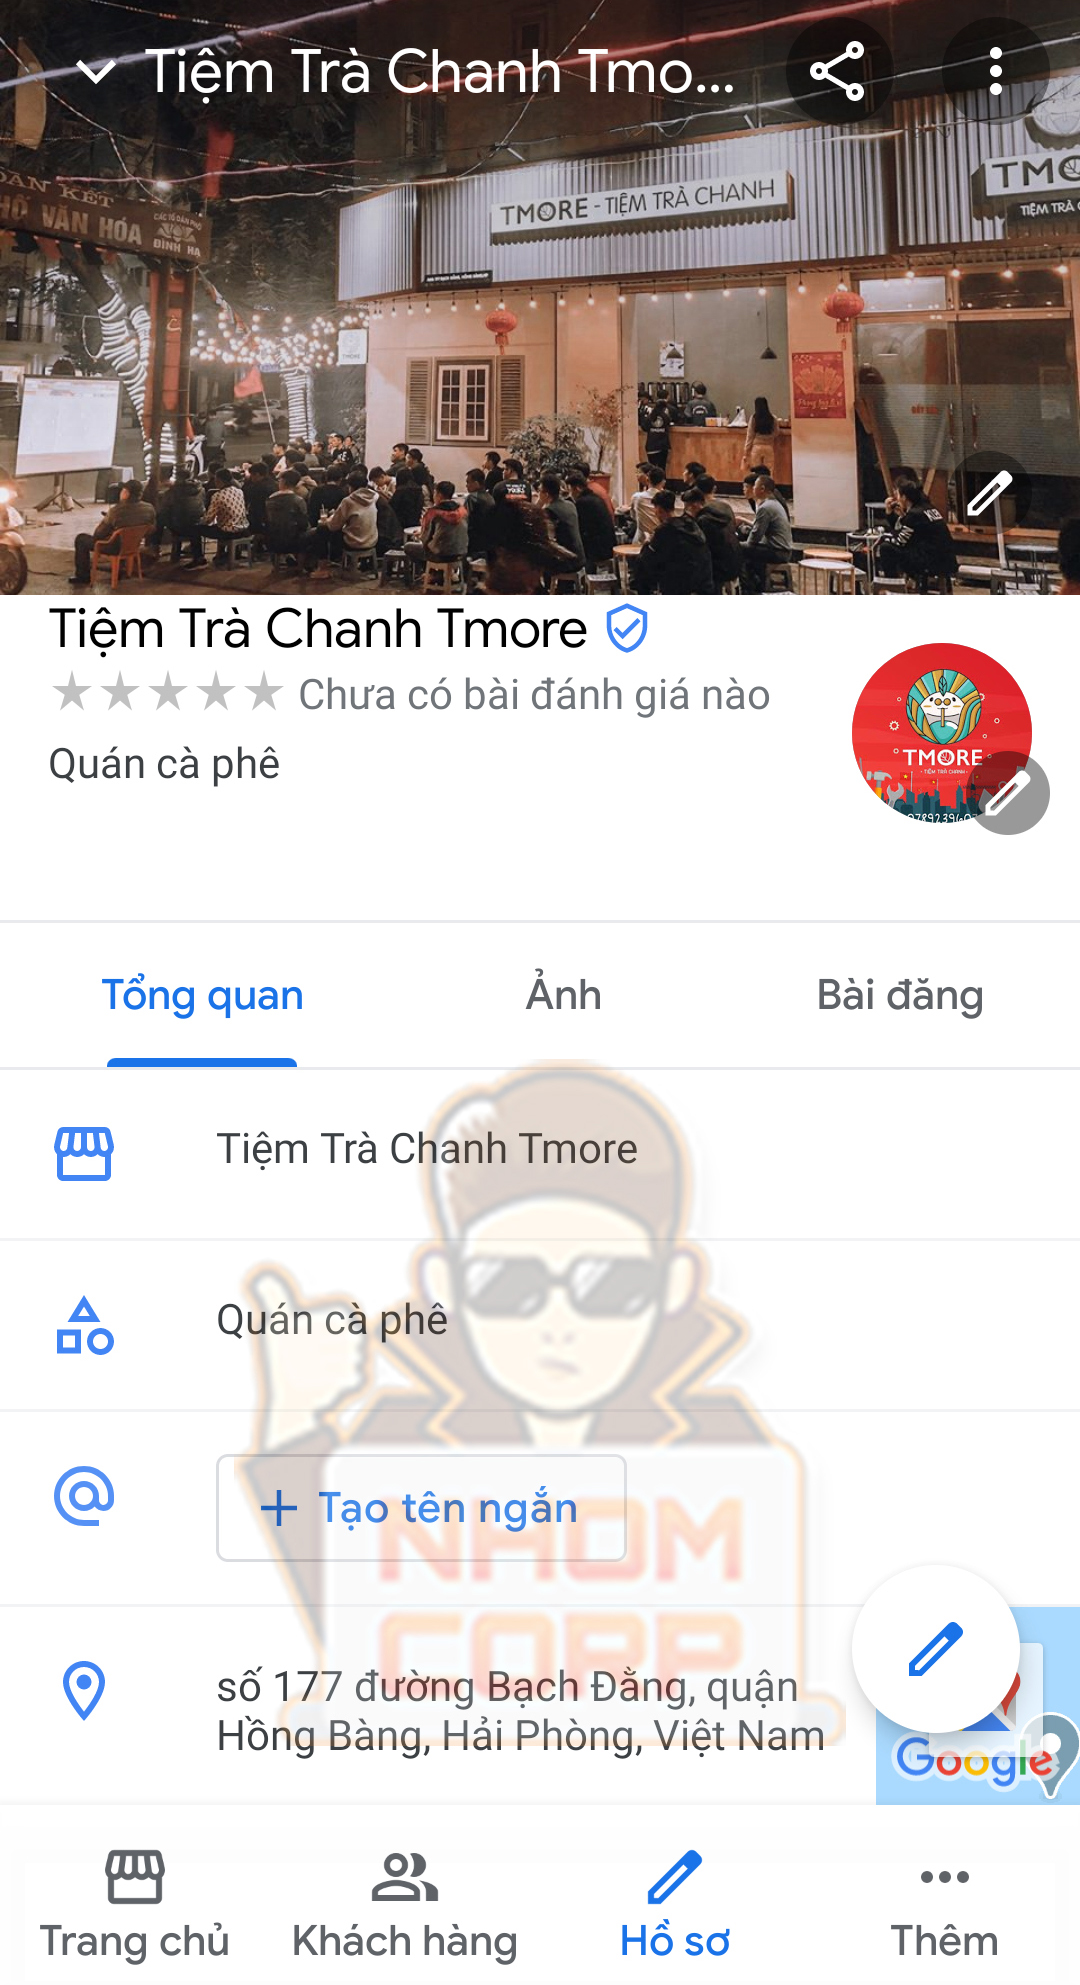 Tiệm Trà Chanh Tmore